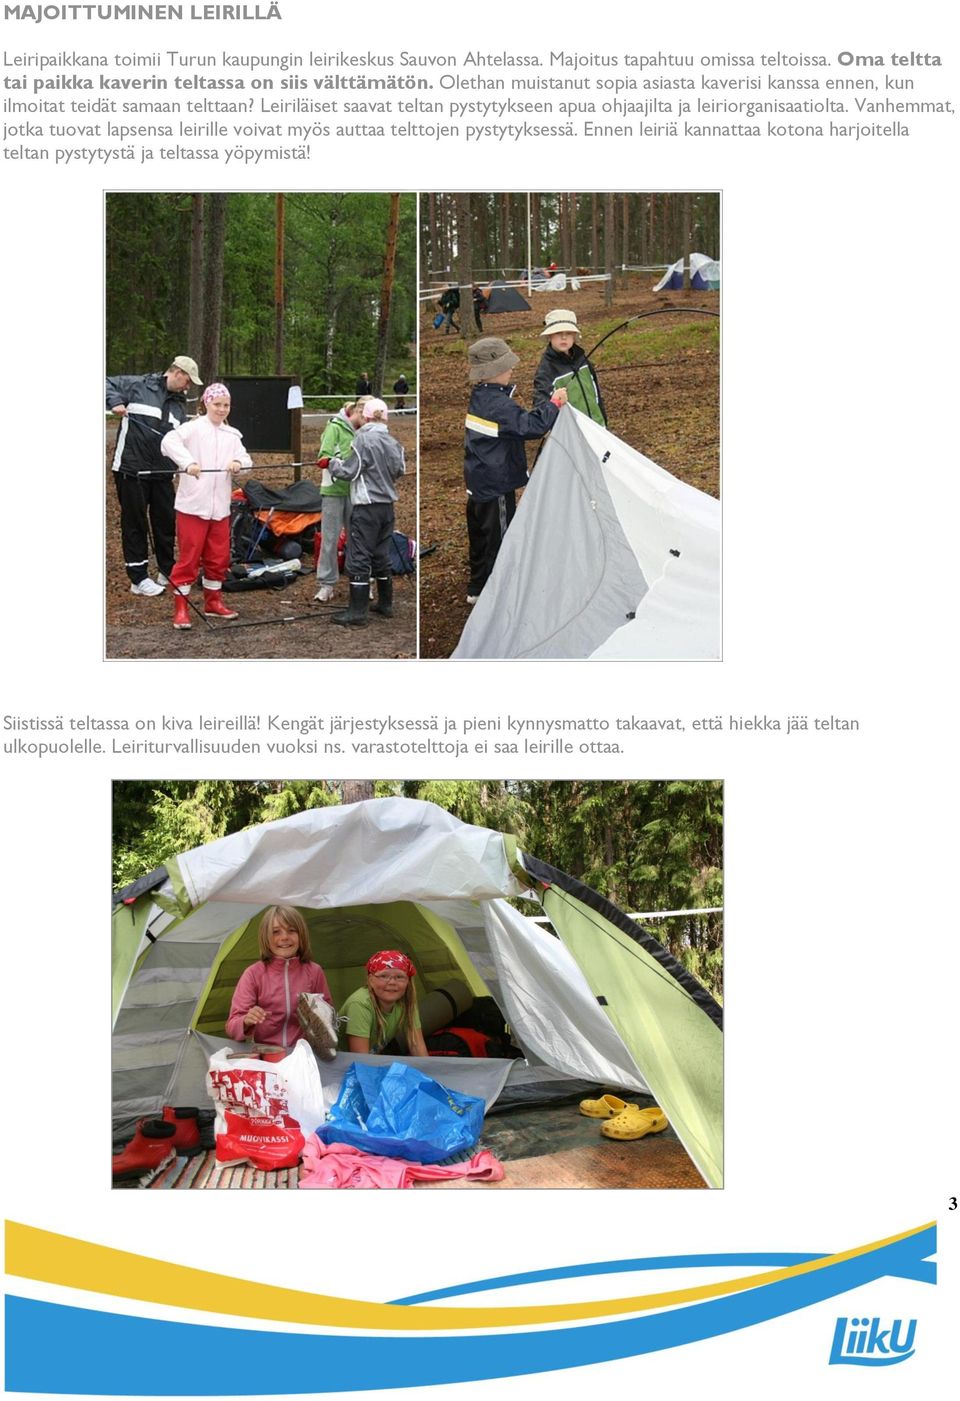 Leiriläiset saavat teltan pystytykseen apua ohjaajilta ja leiriorganisaatiolta. Vanhemmat, jotka tuovat lapsensa leirille voivat myös auttaa telttojen pystytyksessä.